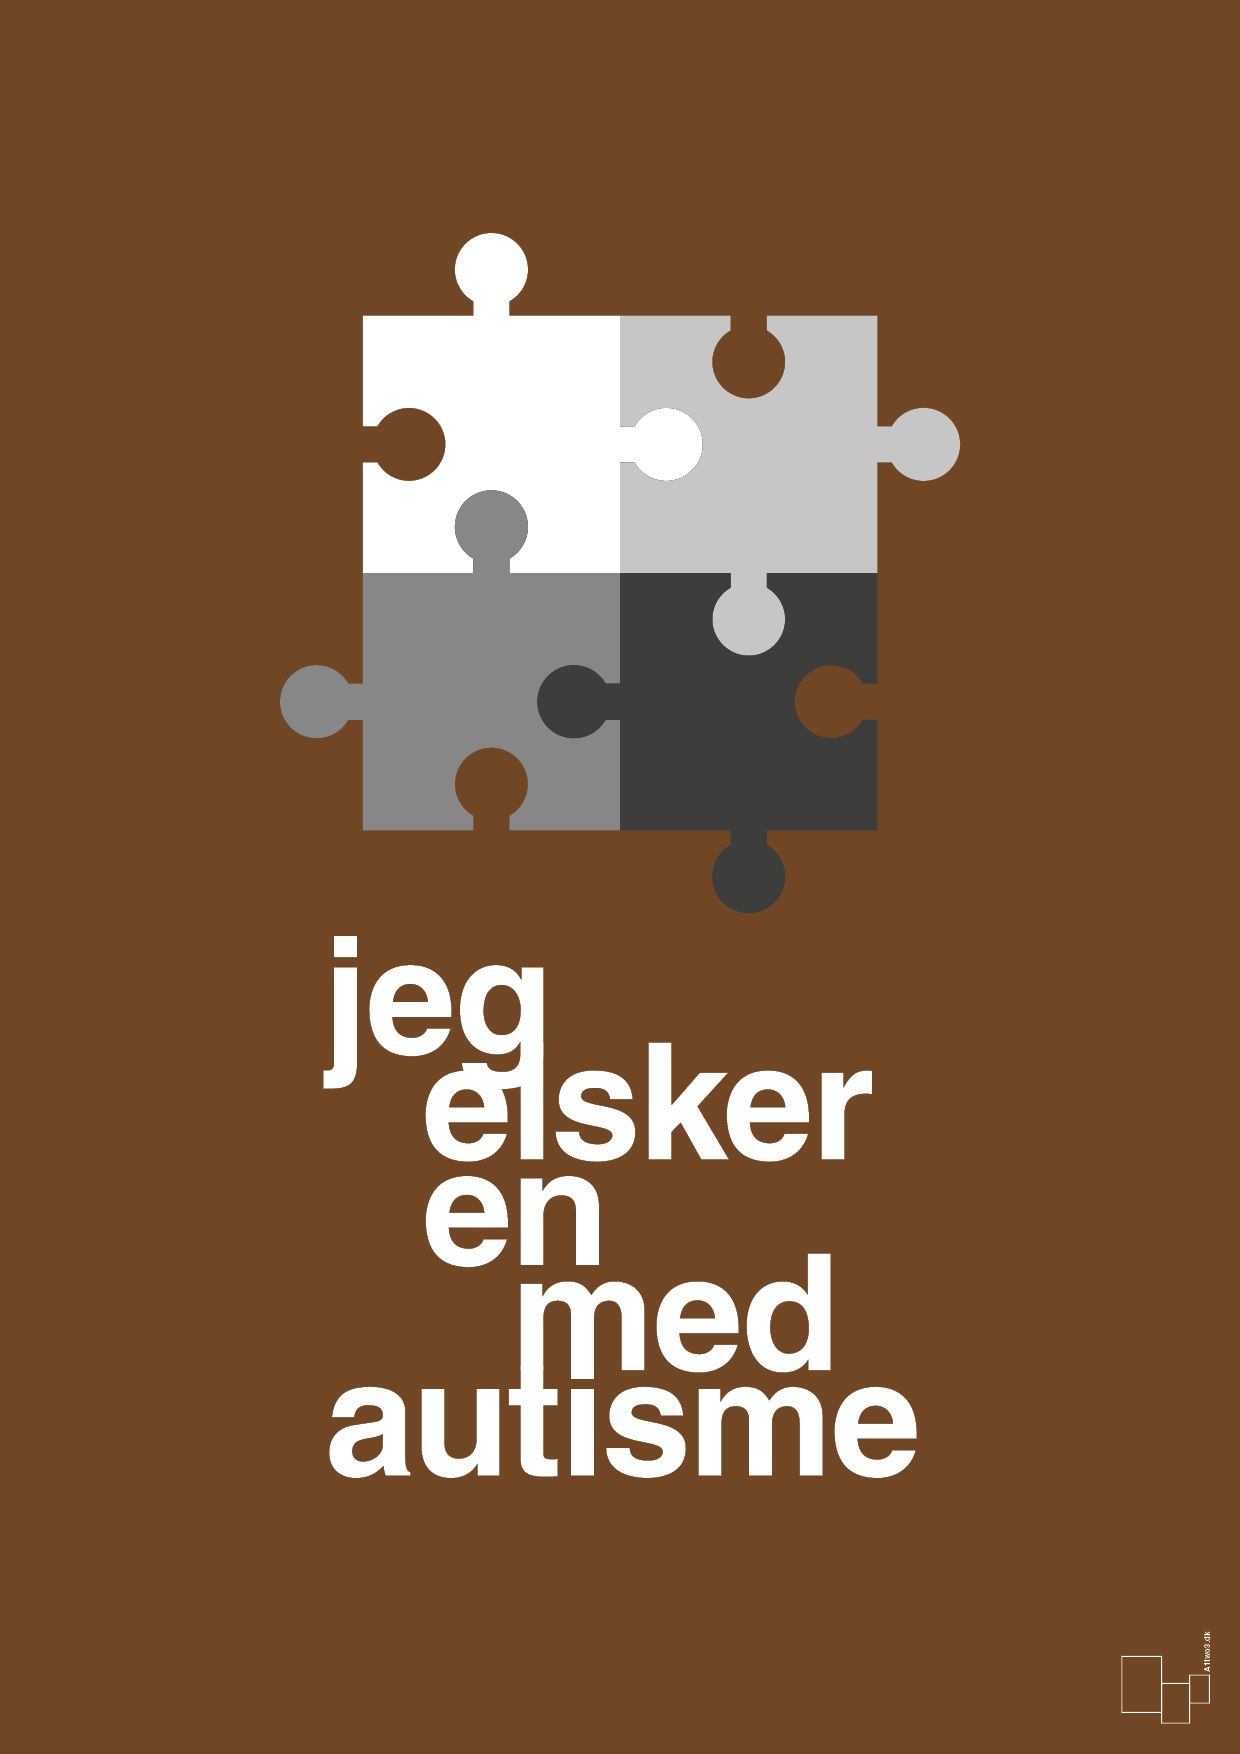 jeg elsker en med autisme - Plakat med Samfund i Dark Brown